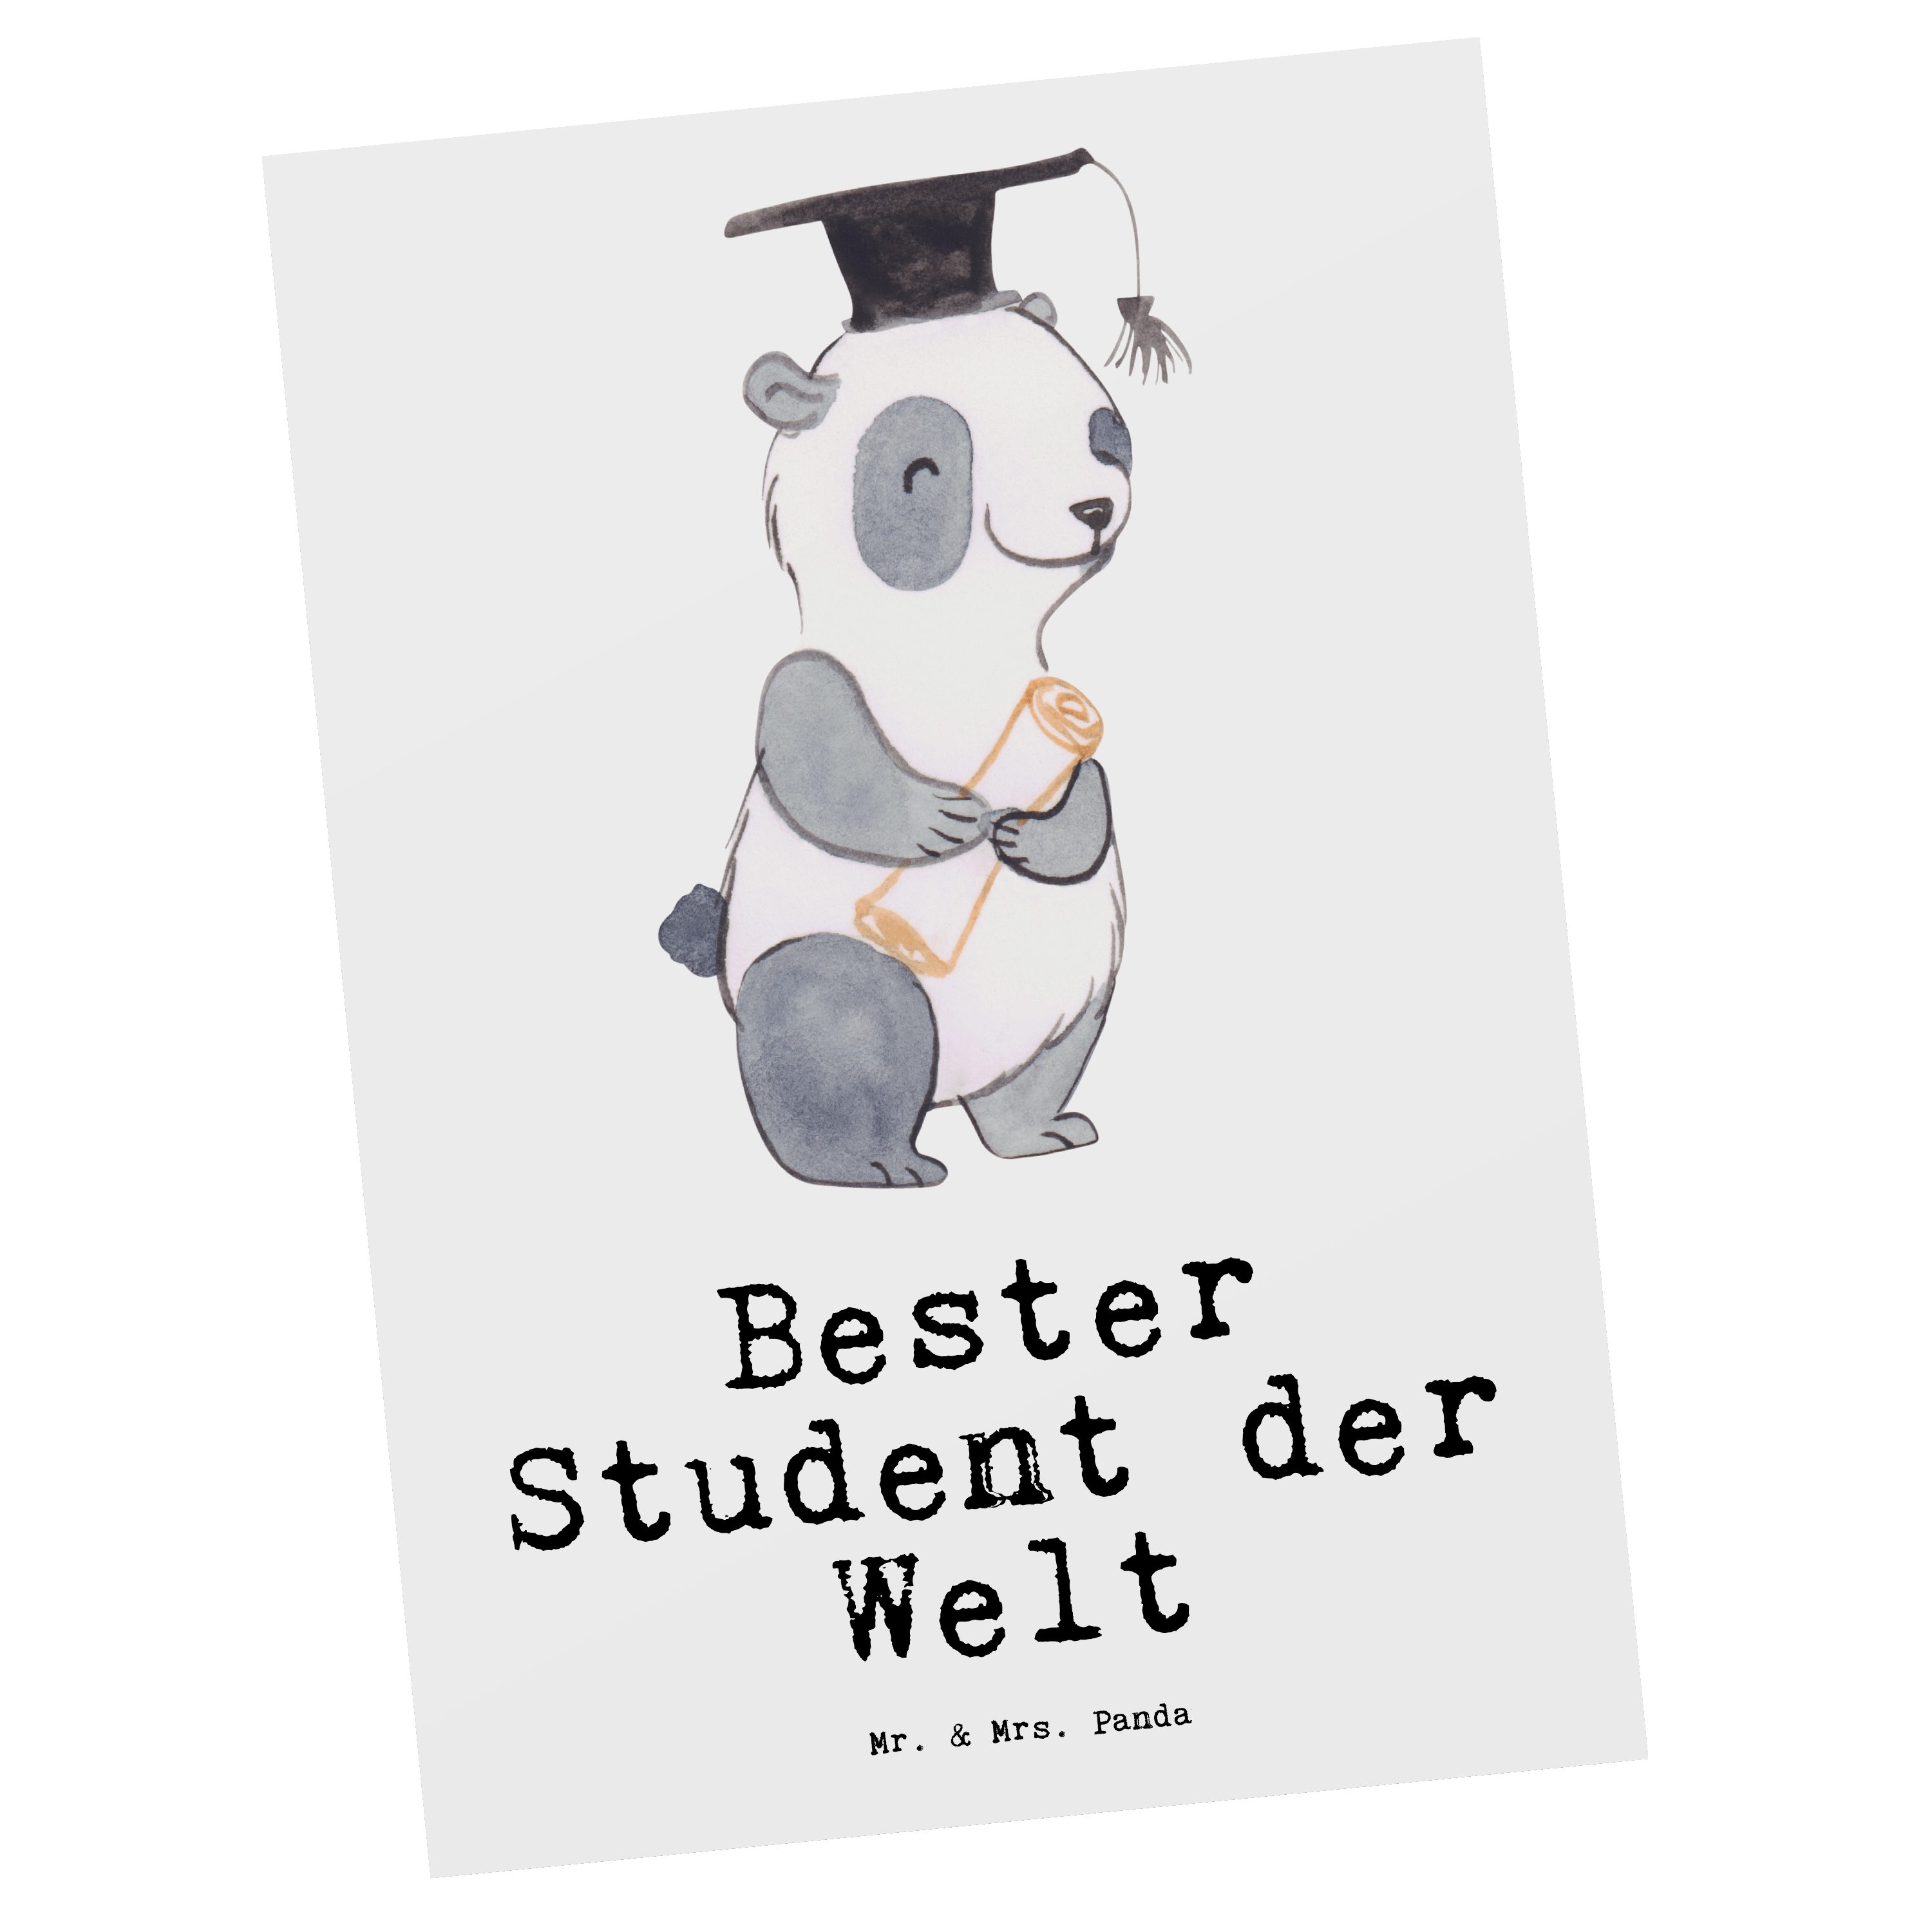 Mr. & Mrs. Panda Postkarte Panda Bester Student der Welt - Weiß - Geschenk, Hochschule, für, Geschenkkarte, Einladung, Grußkarte, Danke, Geschenktipp, Schenken, witzig, Karte